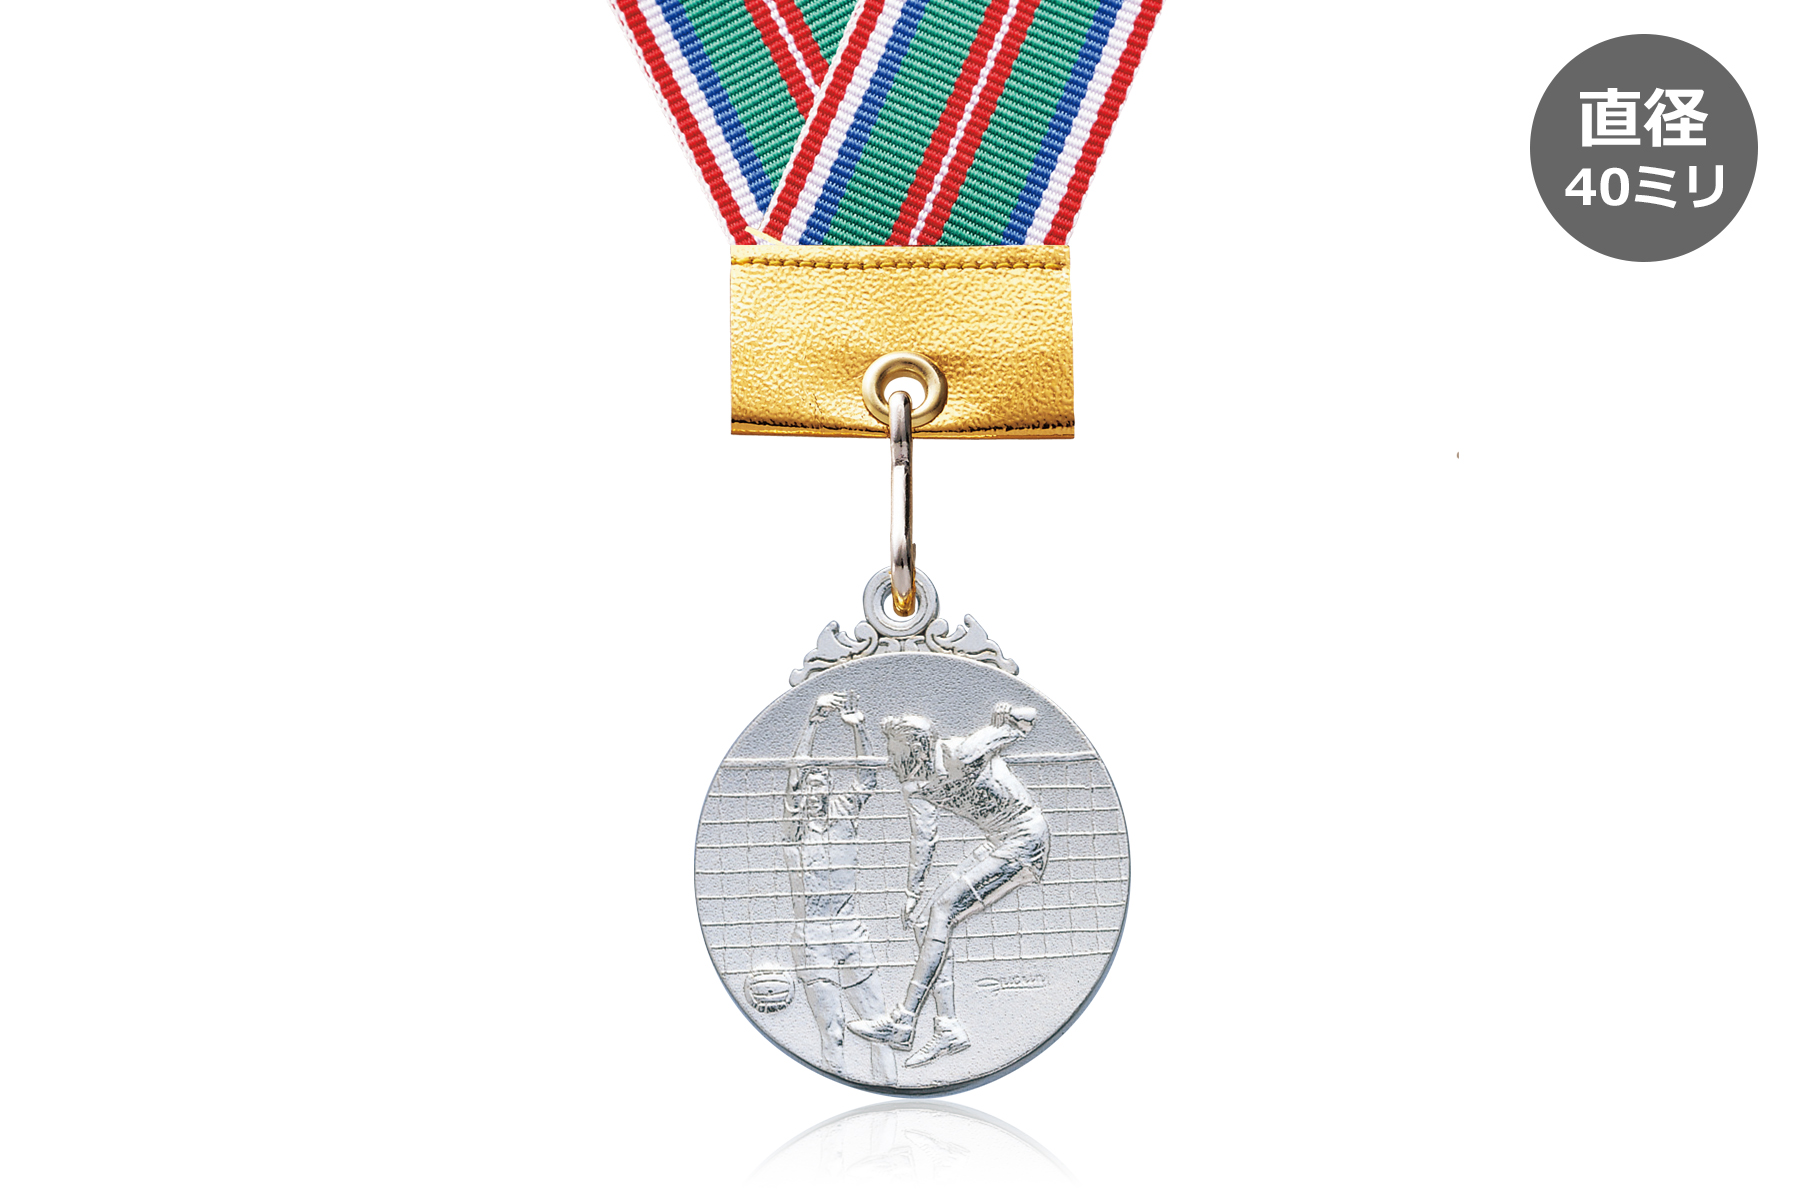 子供バレーボール大会表彰に人気の表彰メダル JW-40Z-volleyball